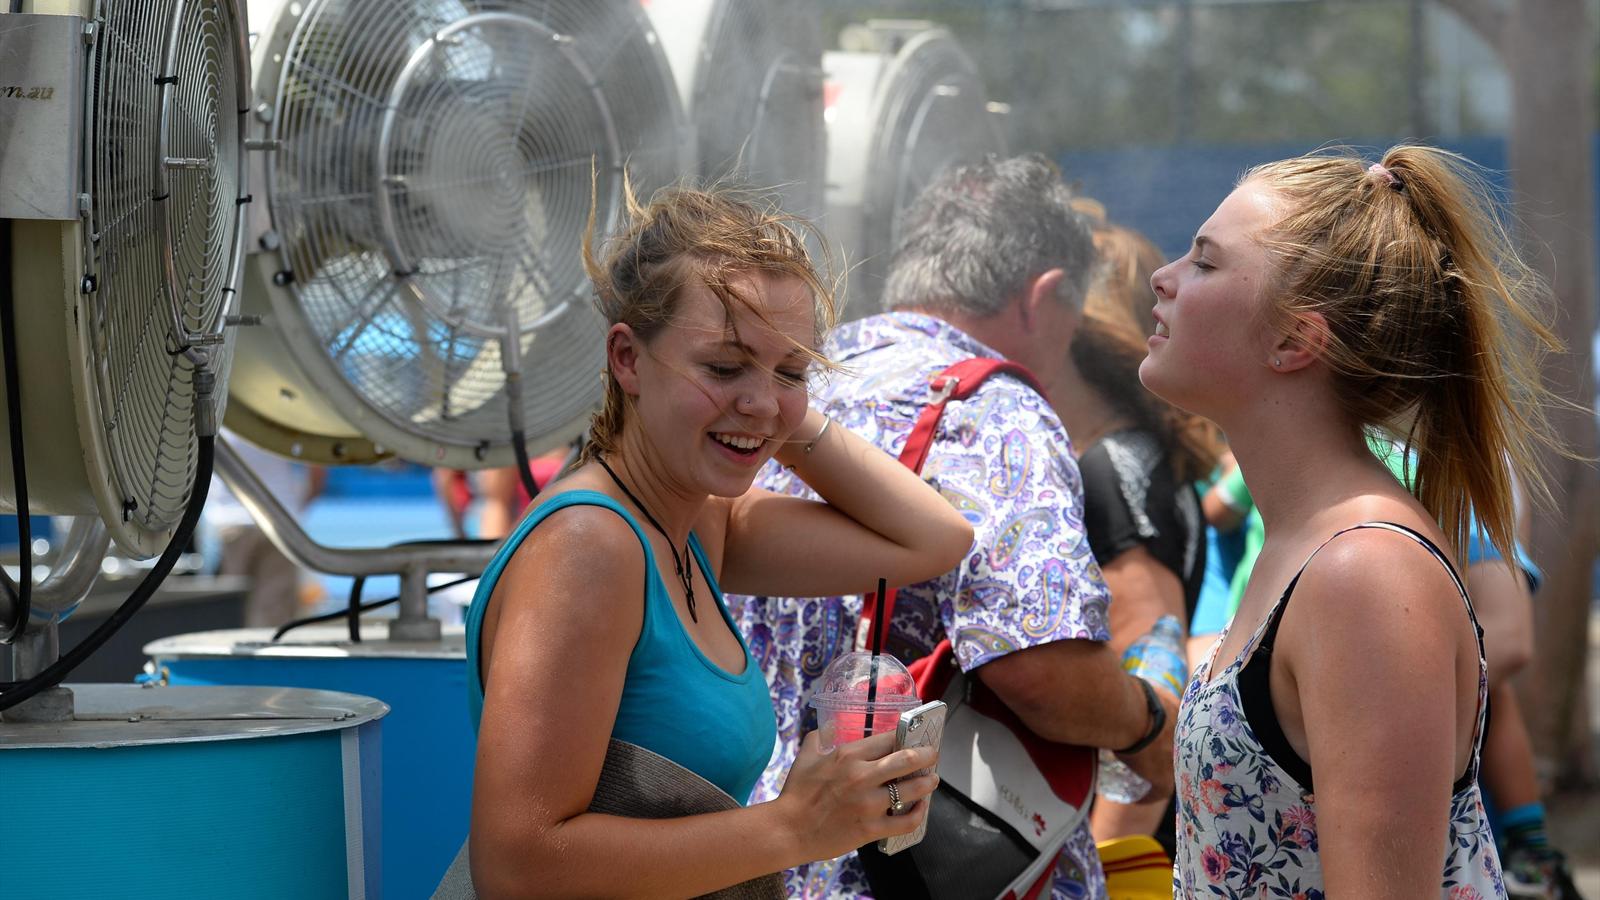 Экстремальная жара навредила молодежи сильнее, чем пожилым людям